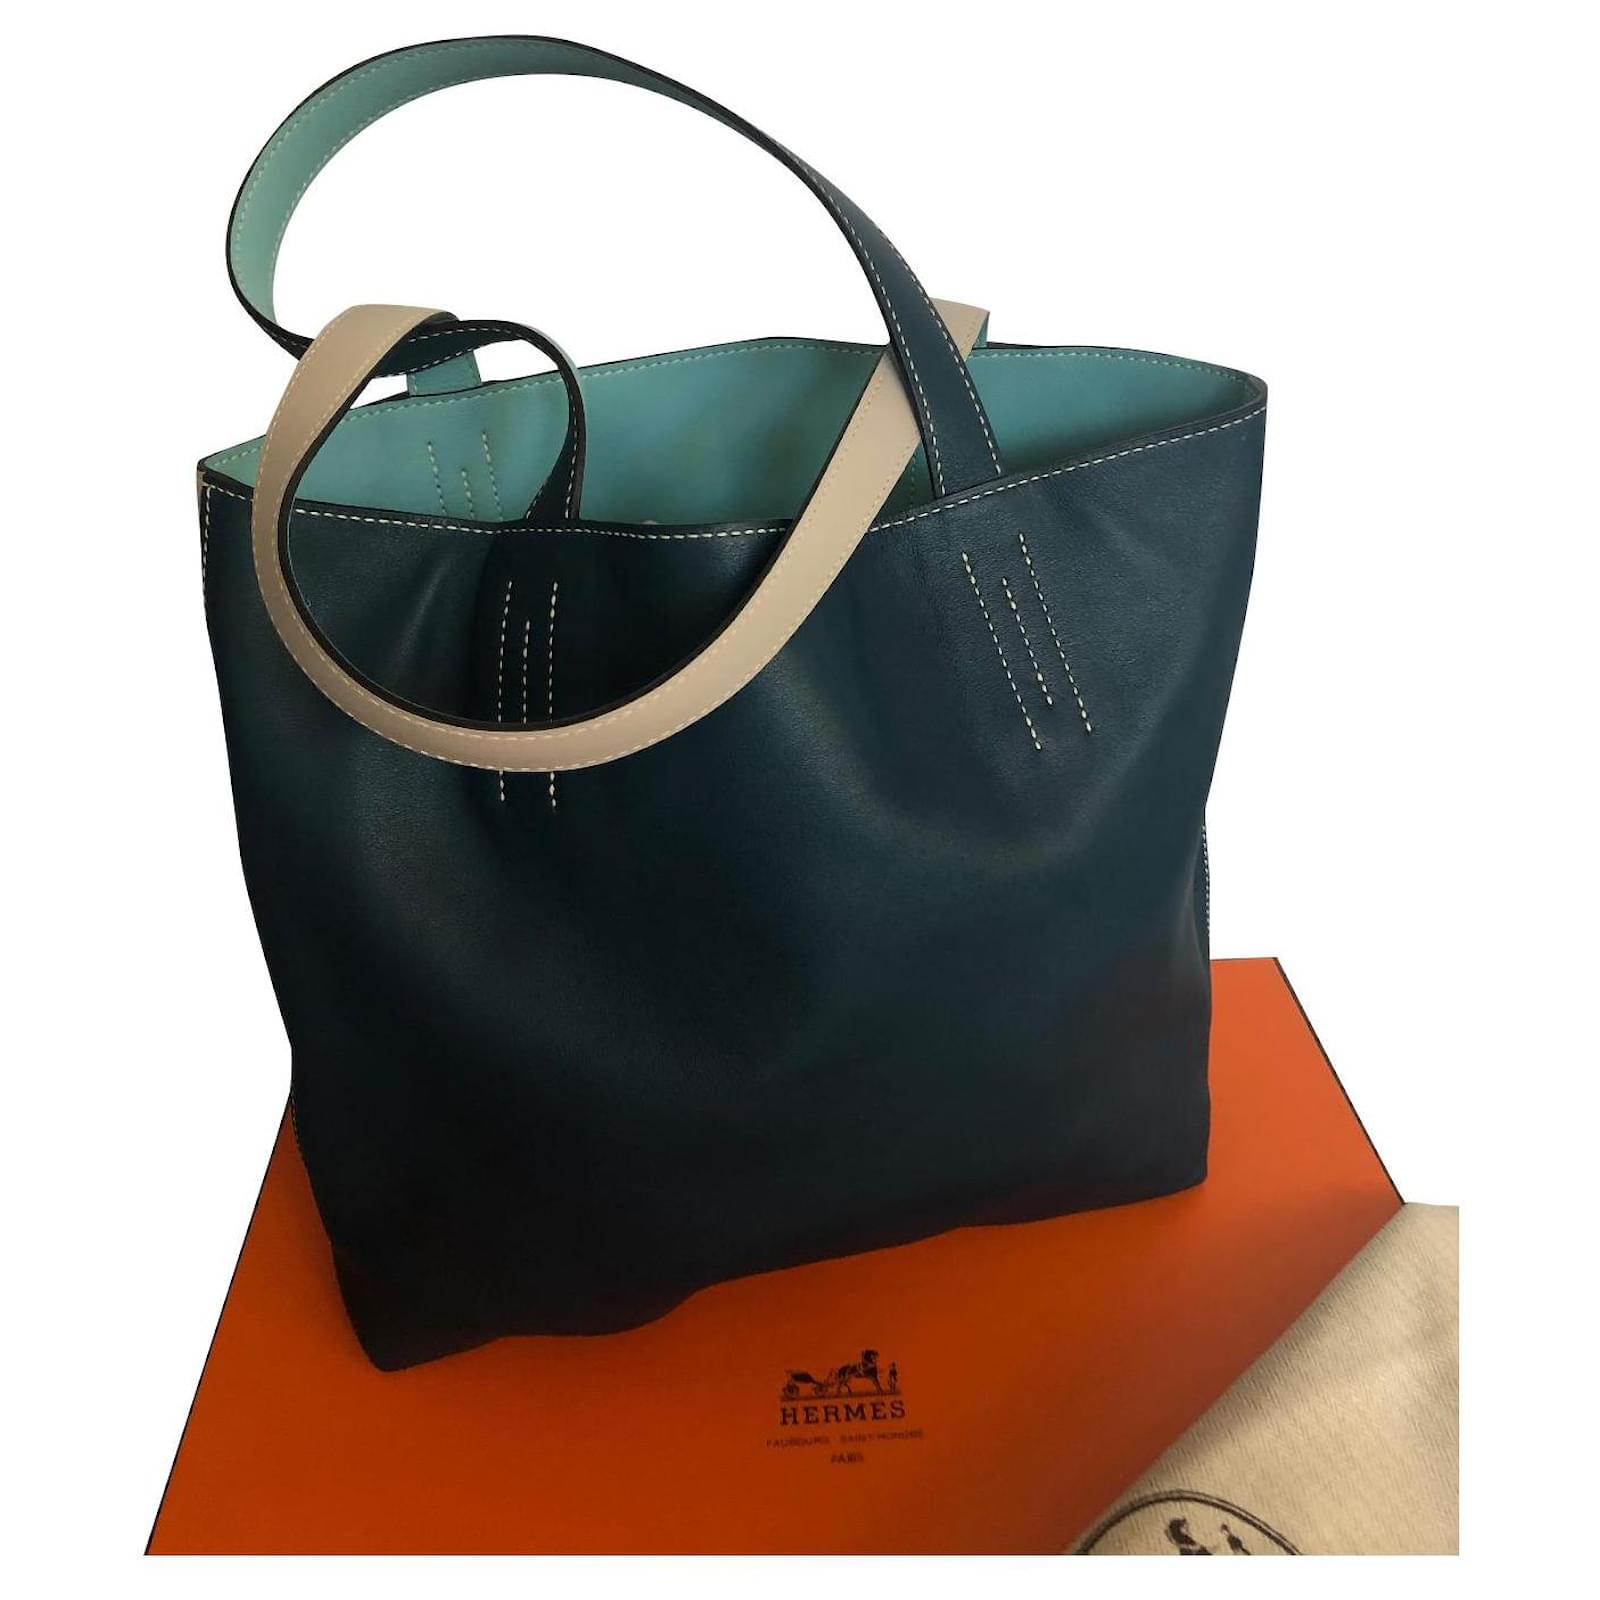 https://cdn1.jolicloset.com/imgr/full/2022/09/631892-1/hermes-light-blue-leather-lined-meaning-handbags.jpg